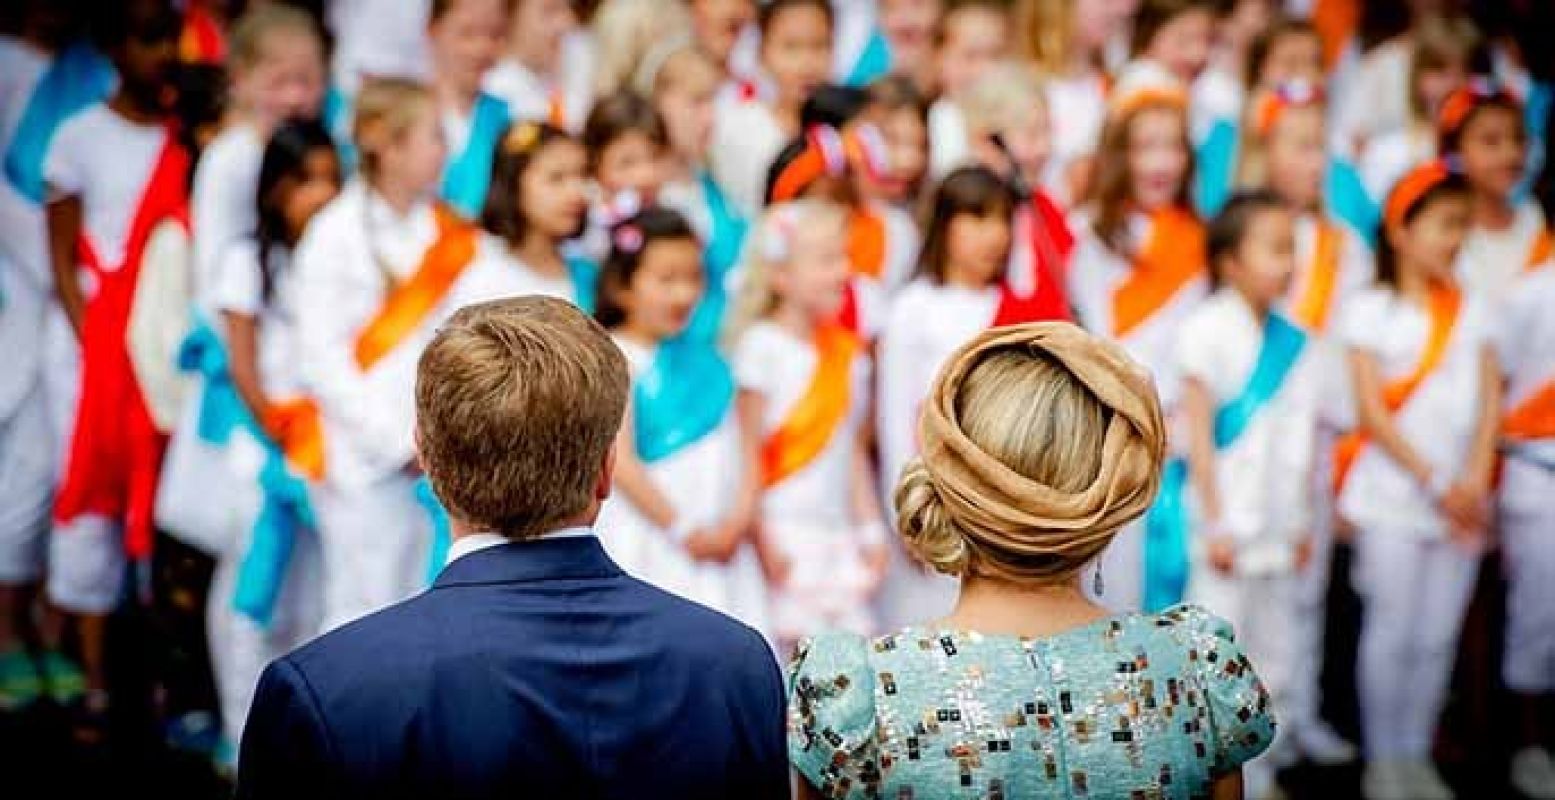 De Koninklijke familie bezoekt Dordrecht dit jaar voor Koningsdag 'nieuwe stijl'. Foto: Organisatie Koningsdag Dordrecht